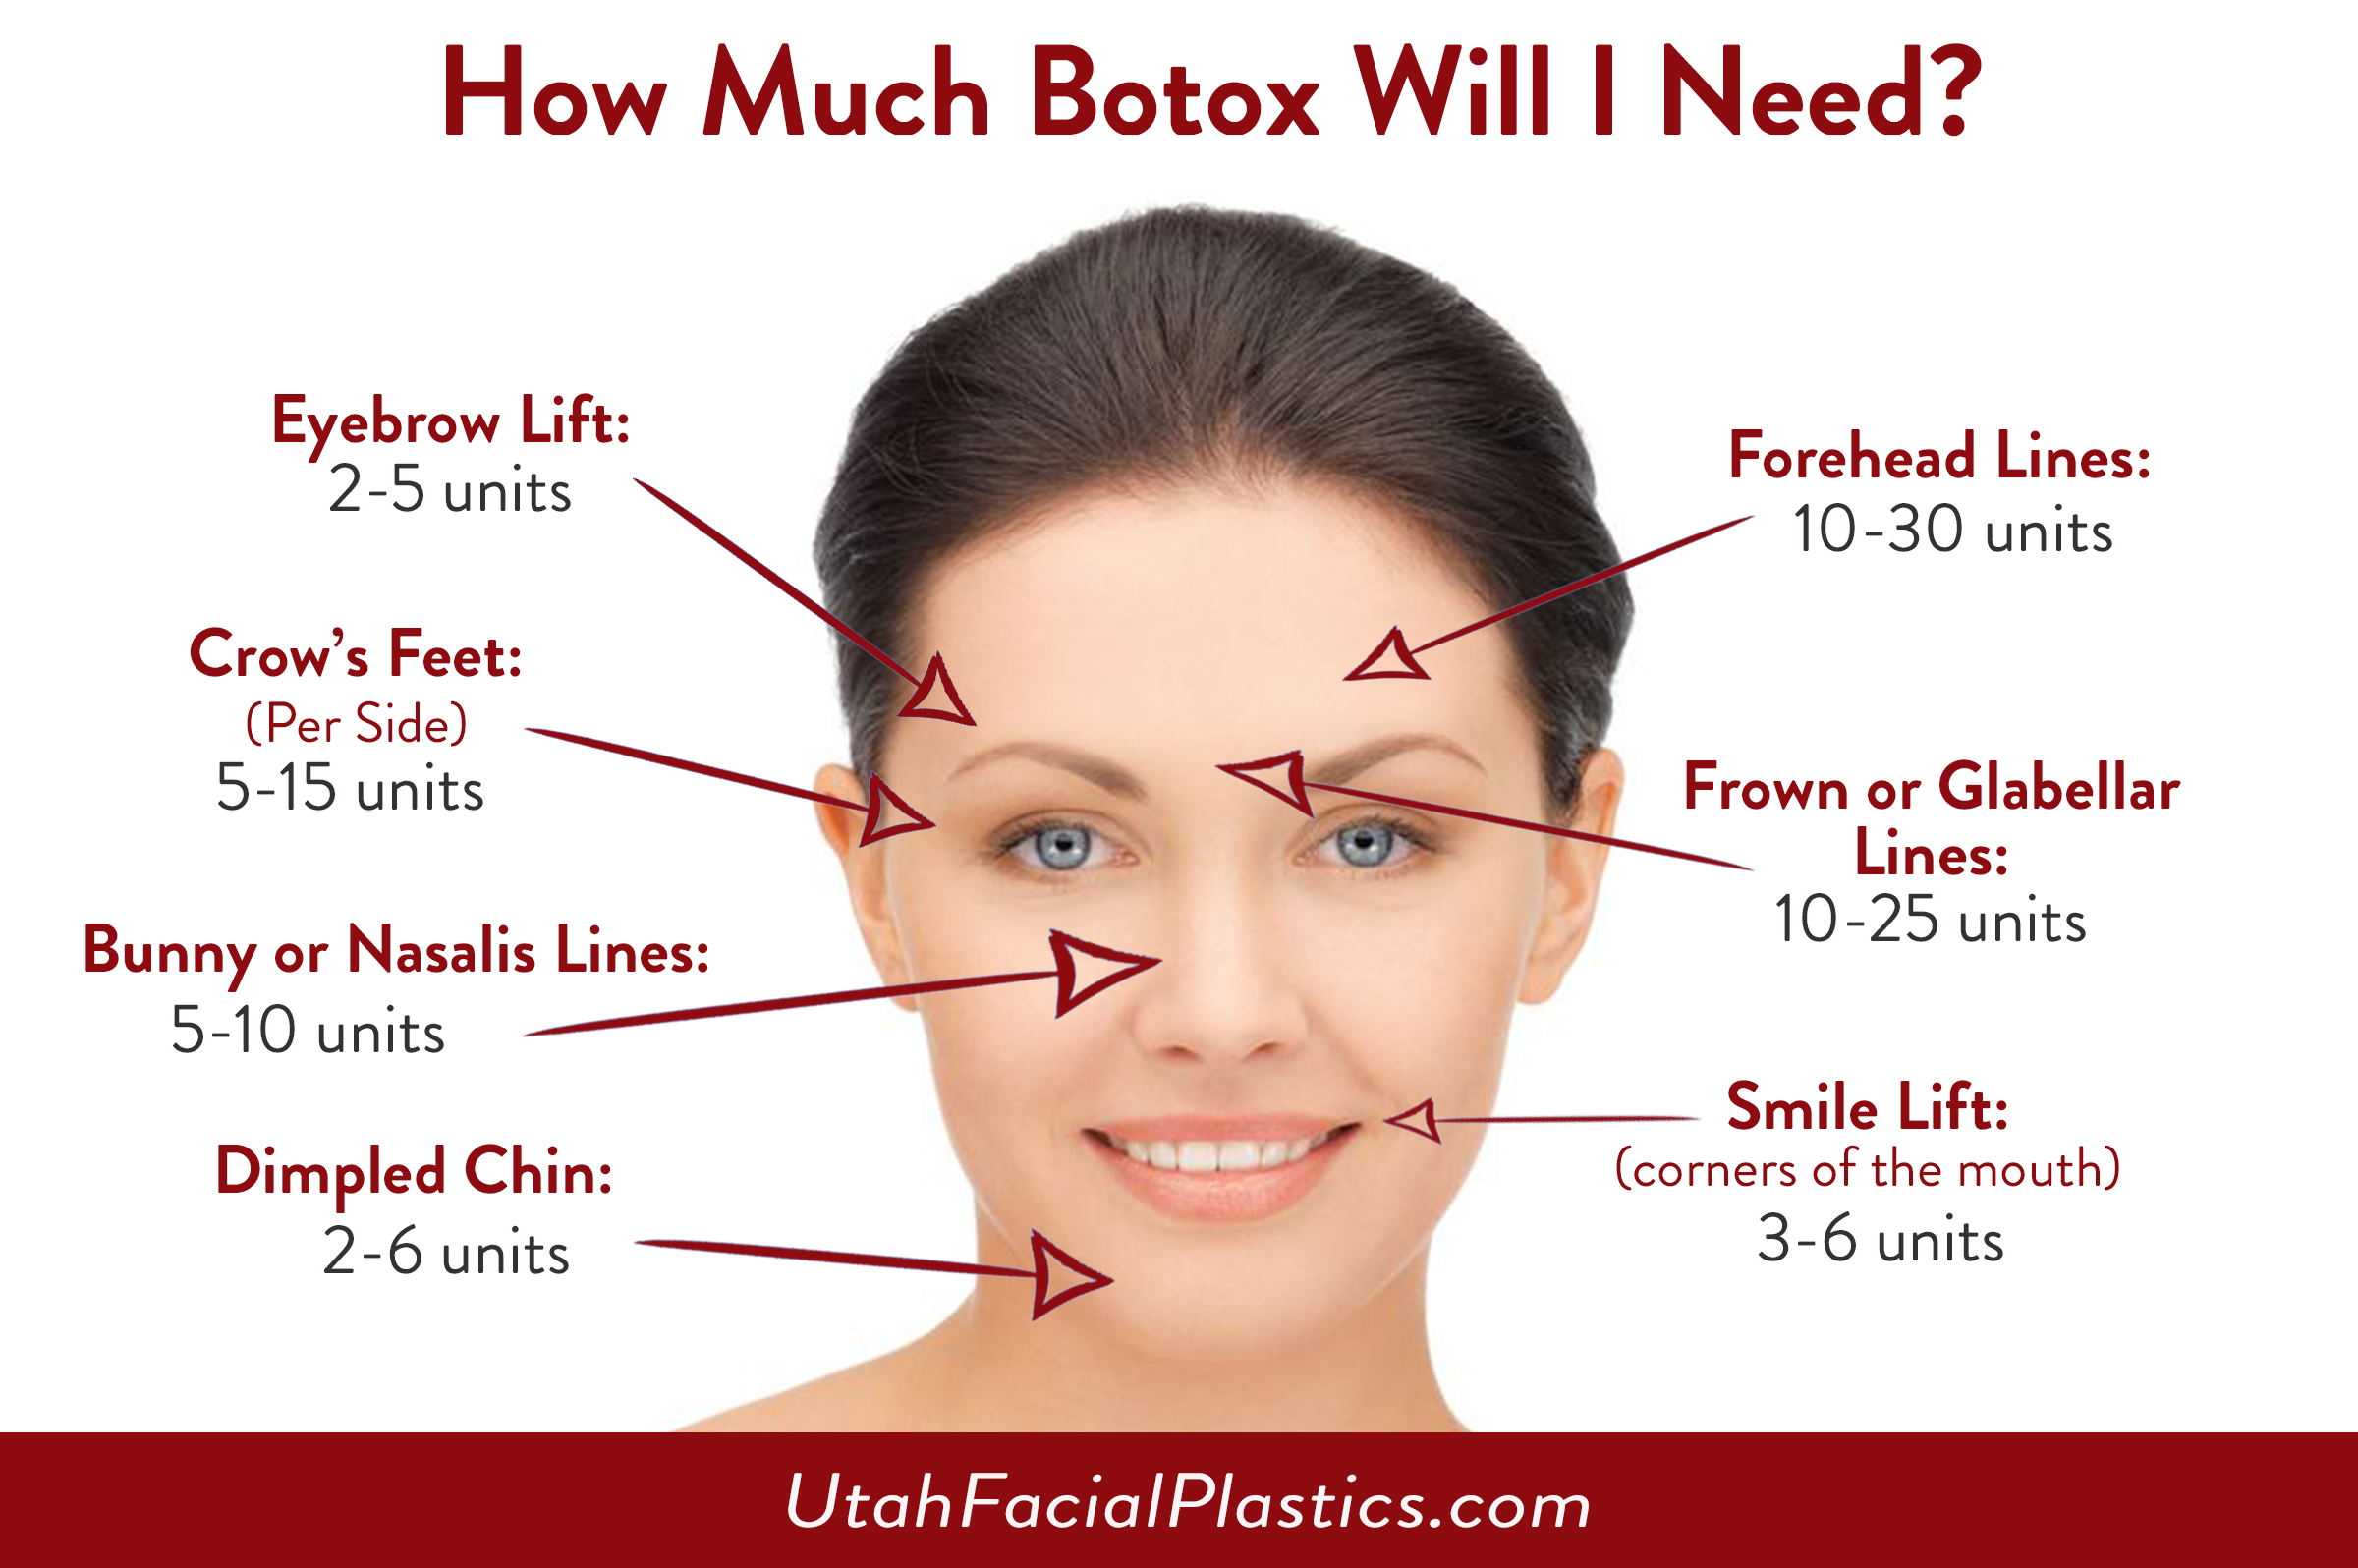 Botox [組圖+影片] 的最新詳盡資料** (必看!!)